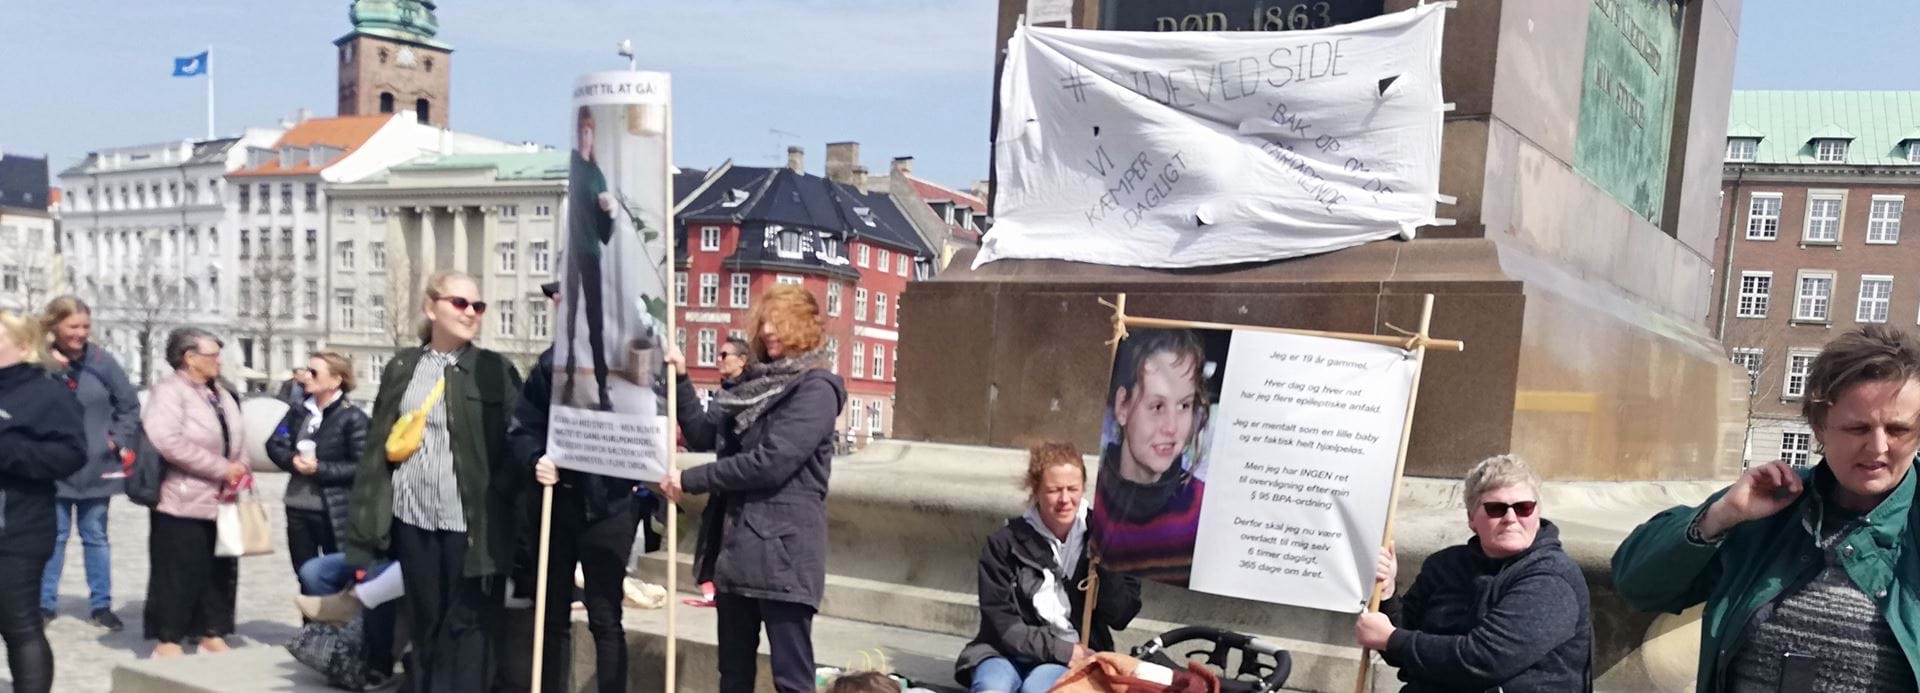 Demonstration Christiansborg 24.04.19